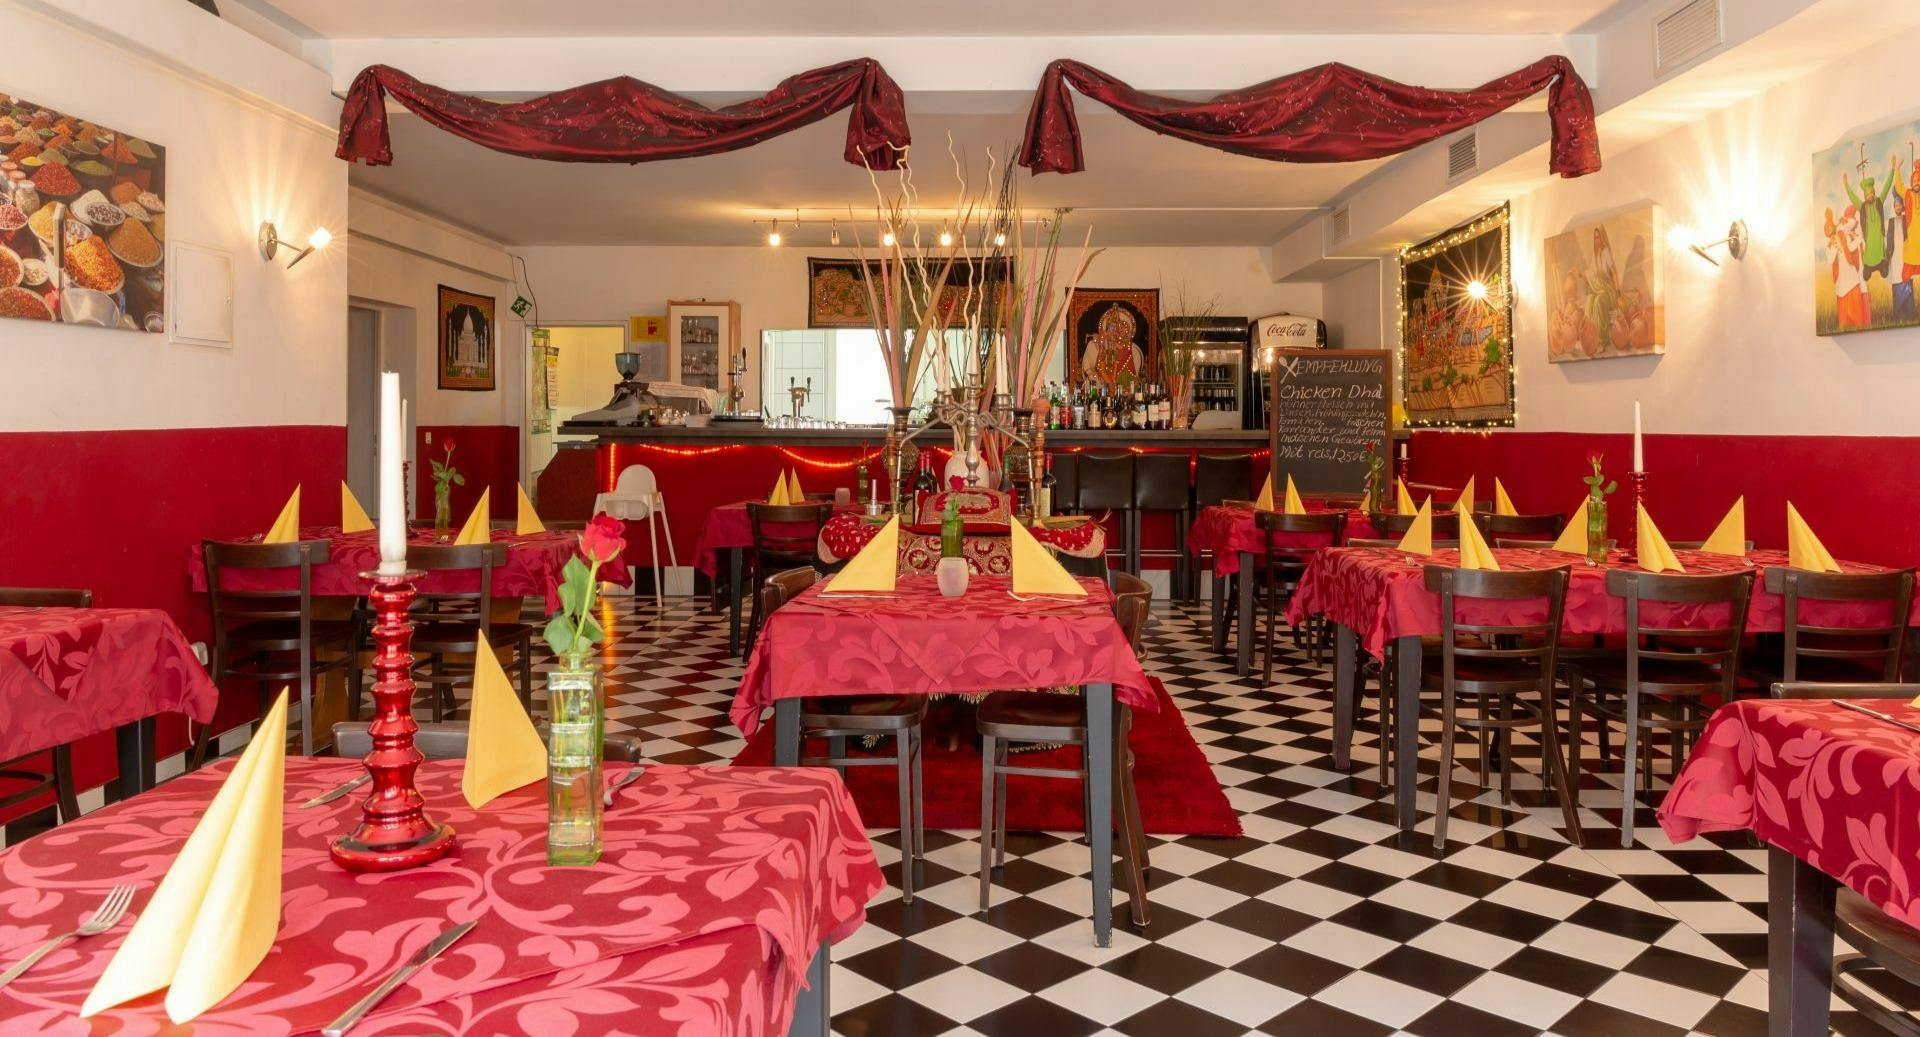 Fotos von Restaurant Gandhi in Dellbrück, Köln